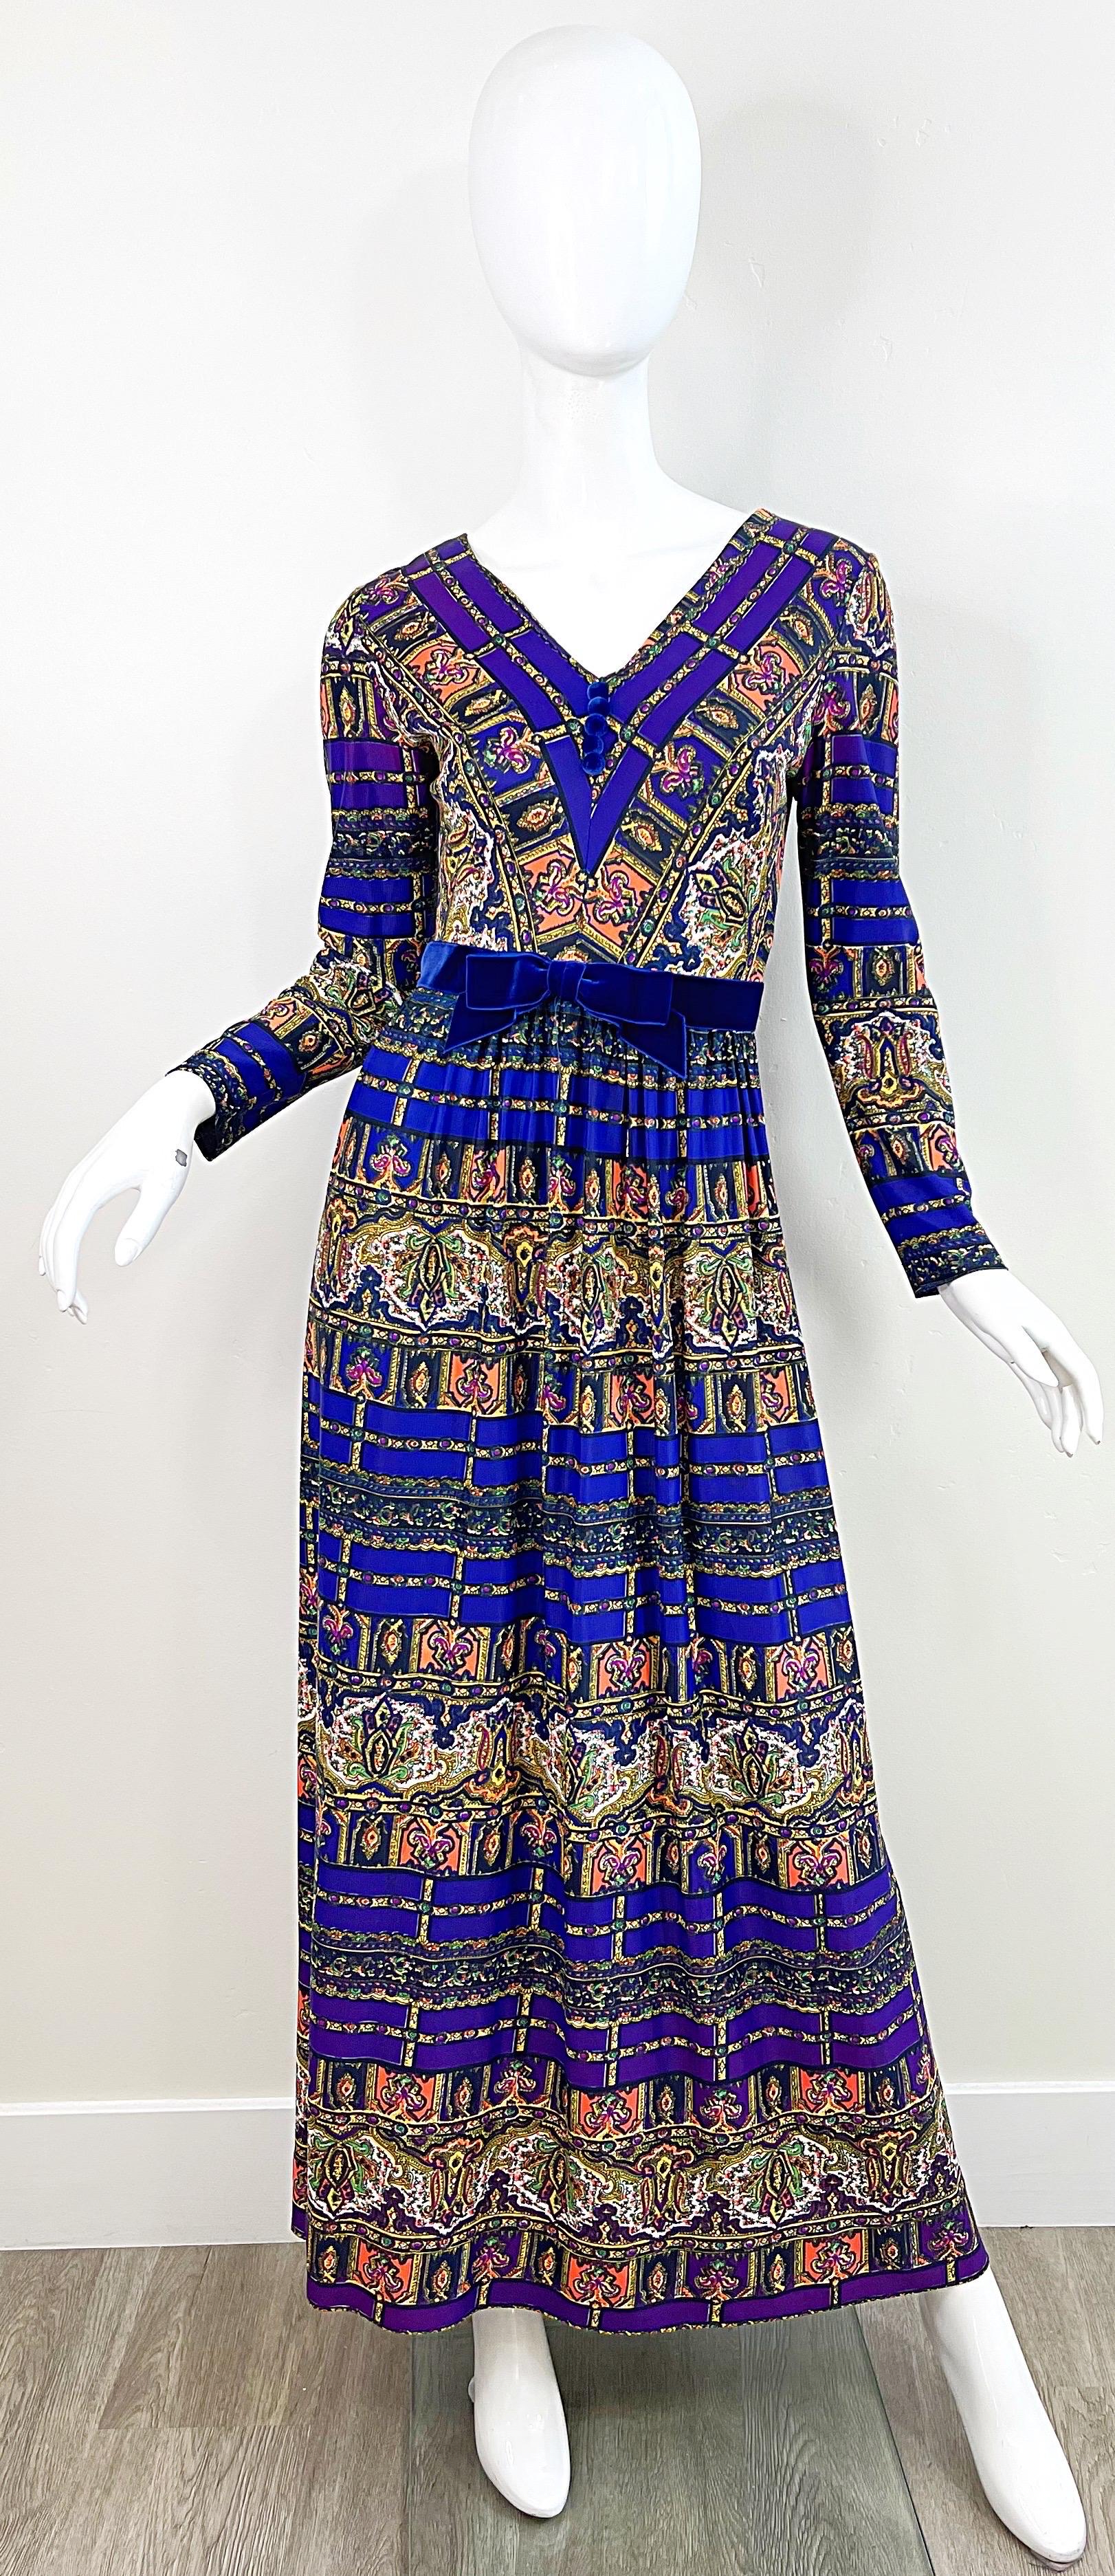 Superbe robe longue violette à manches longues imprimée marocaine des années 1970 ! Les couleurs vibrantes de l'orange, du fuchsia, du vert, du jaune, du rose et du bleu sont omniprésentes. Ceinture en velours royal attachée à la taille. Fermeture à